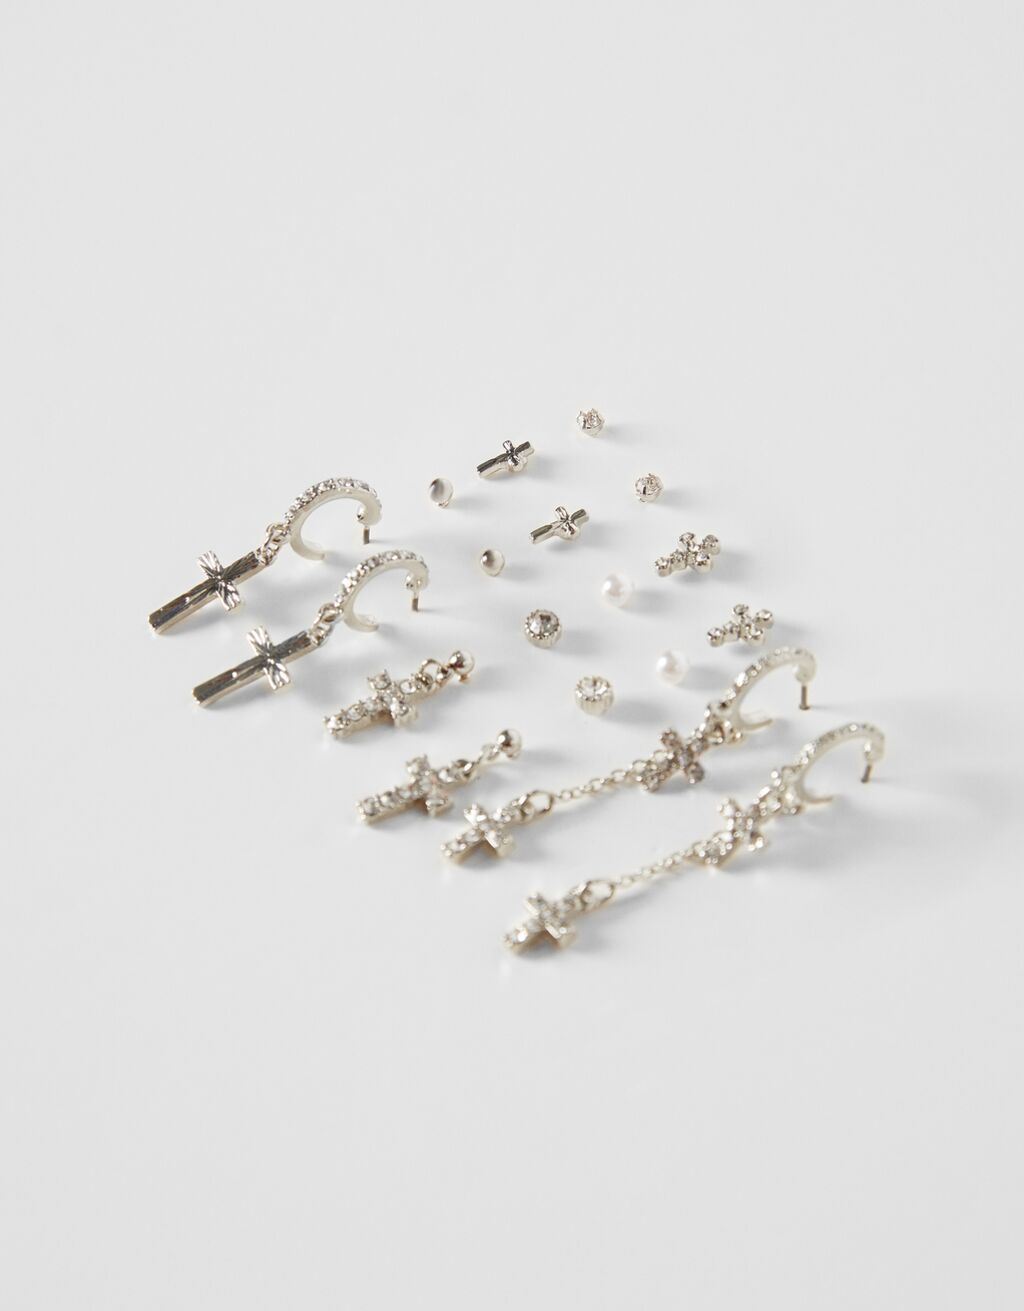 Set of 9 pairs of cross earrings